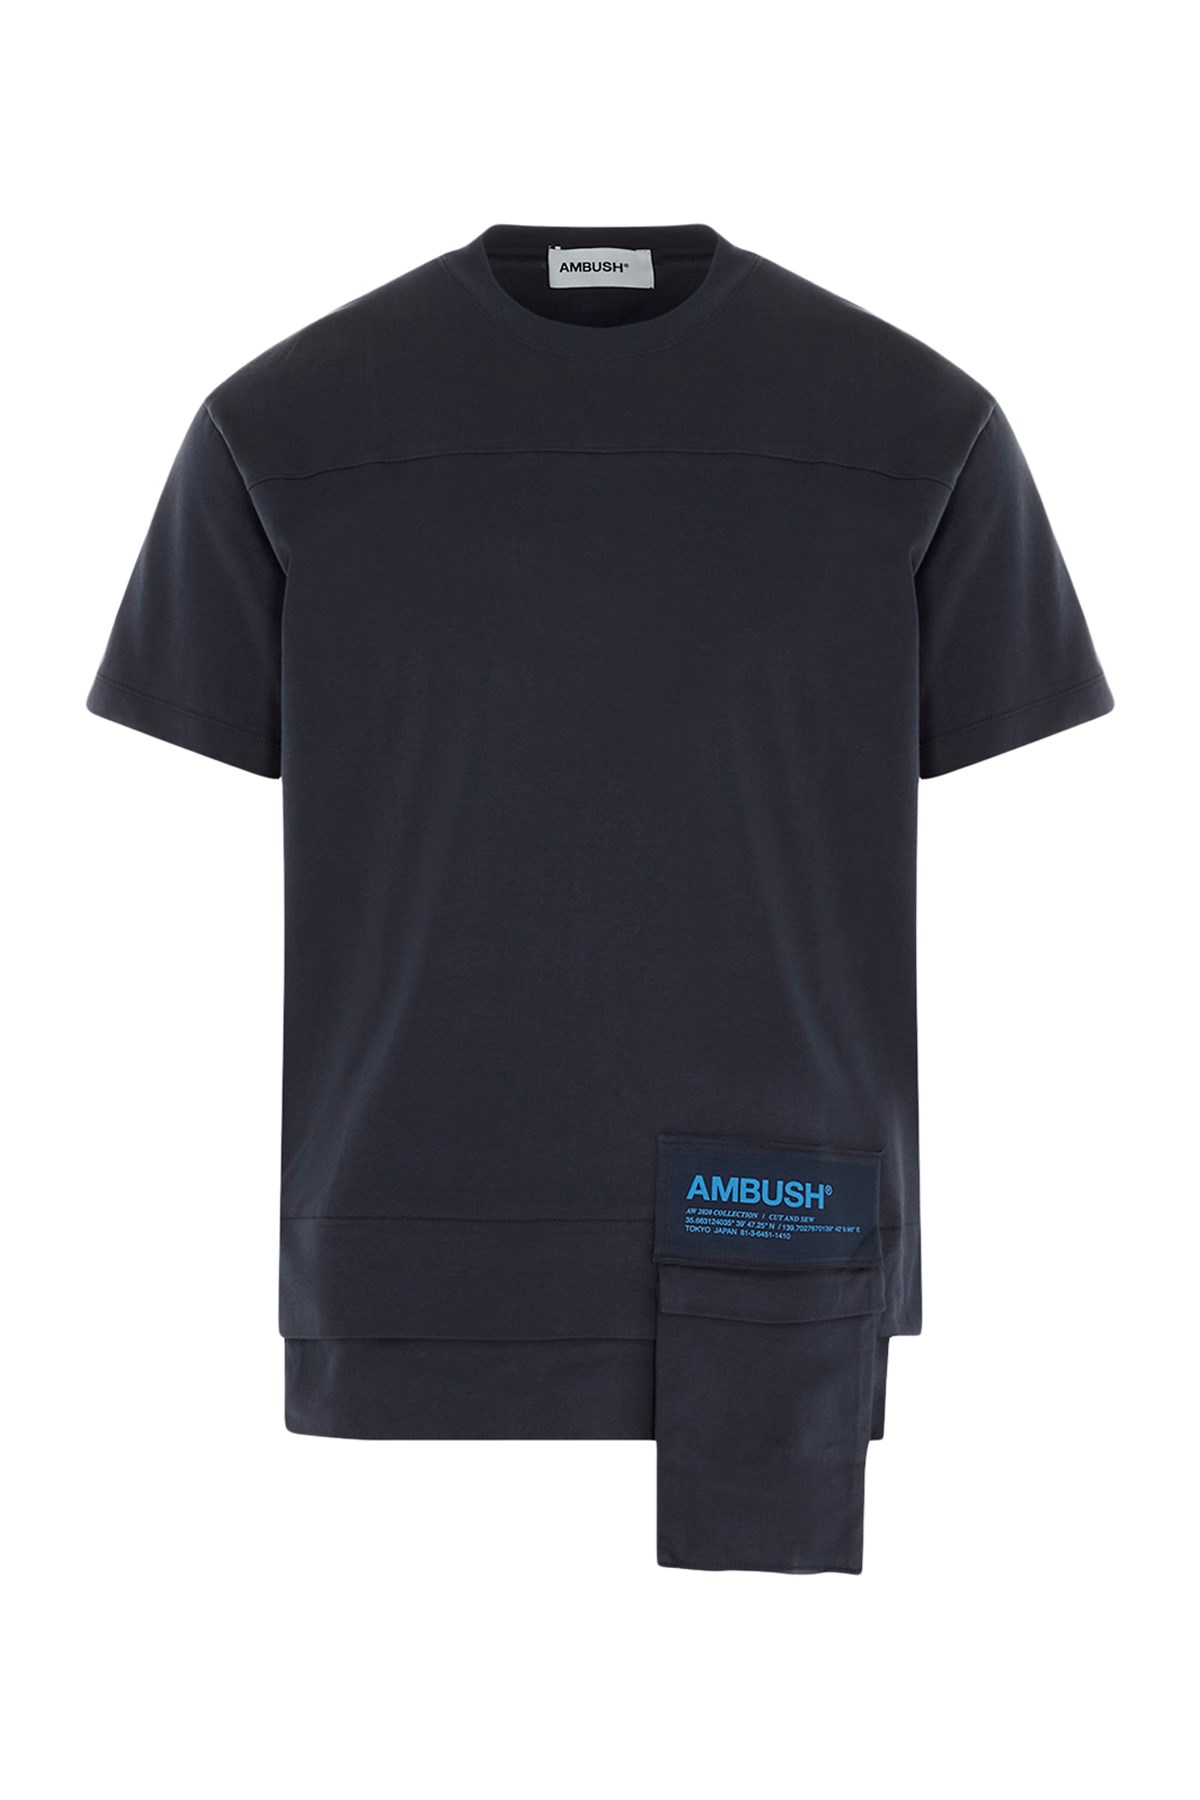 AMBUSH New Waist Pocket ' T-Shirt